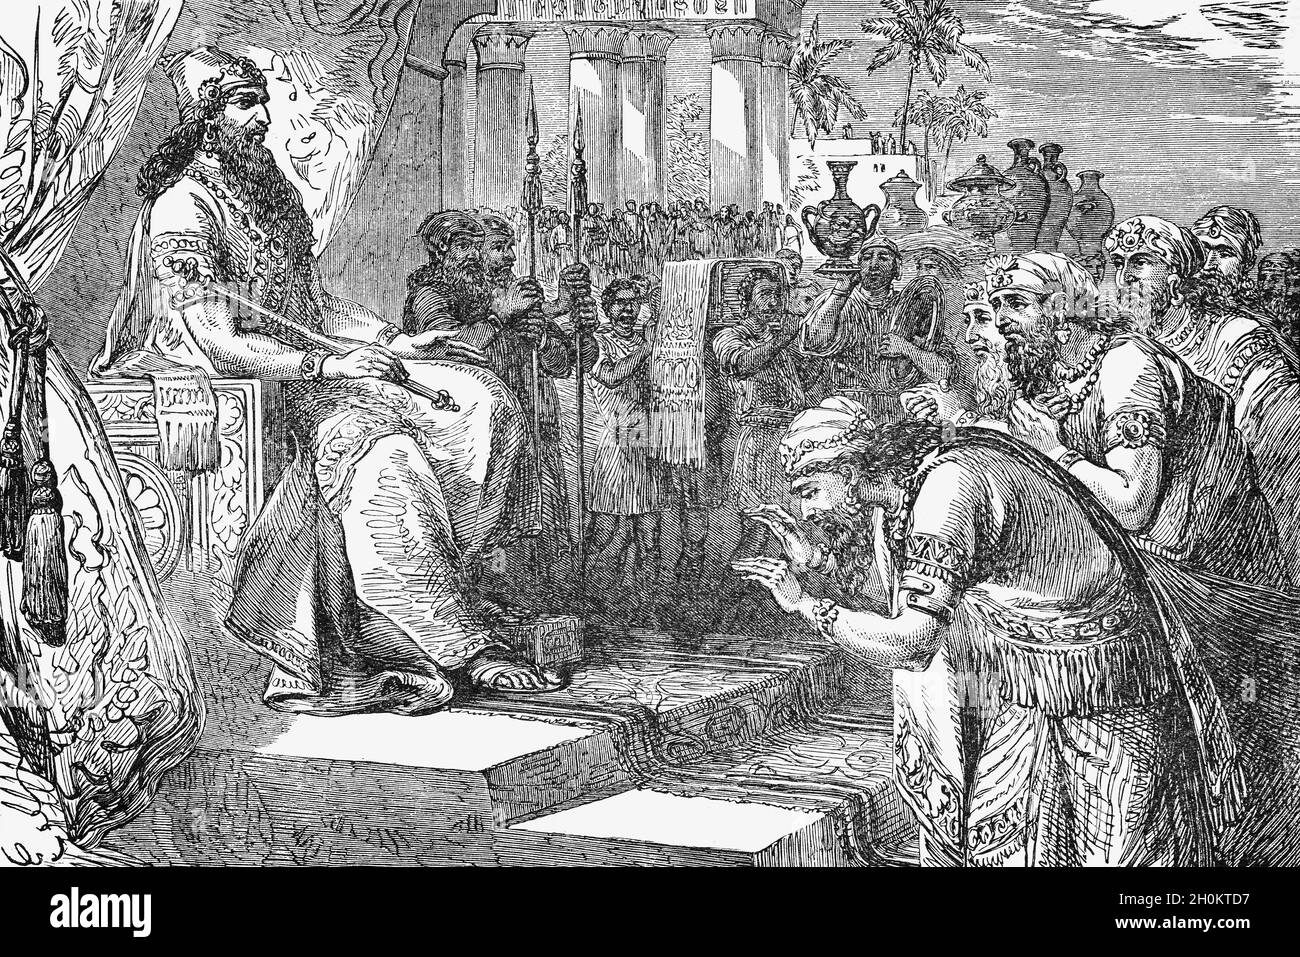 Illustration de la fin du XIXe siècle du Livre des Rois, dans l'ancien  Testament, du roi Salomon recevant les envoyés des nations tributaires.Il  régna sur tous les royaumes, de l'Euphrate au pays